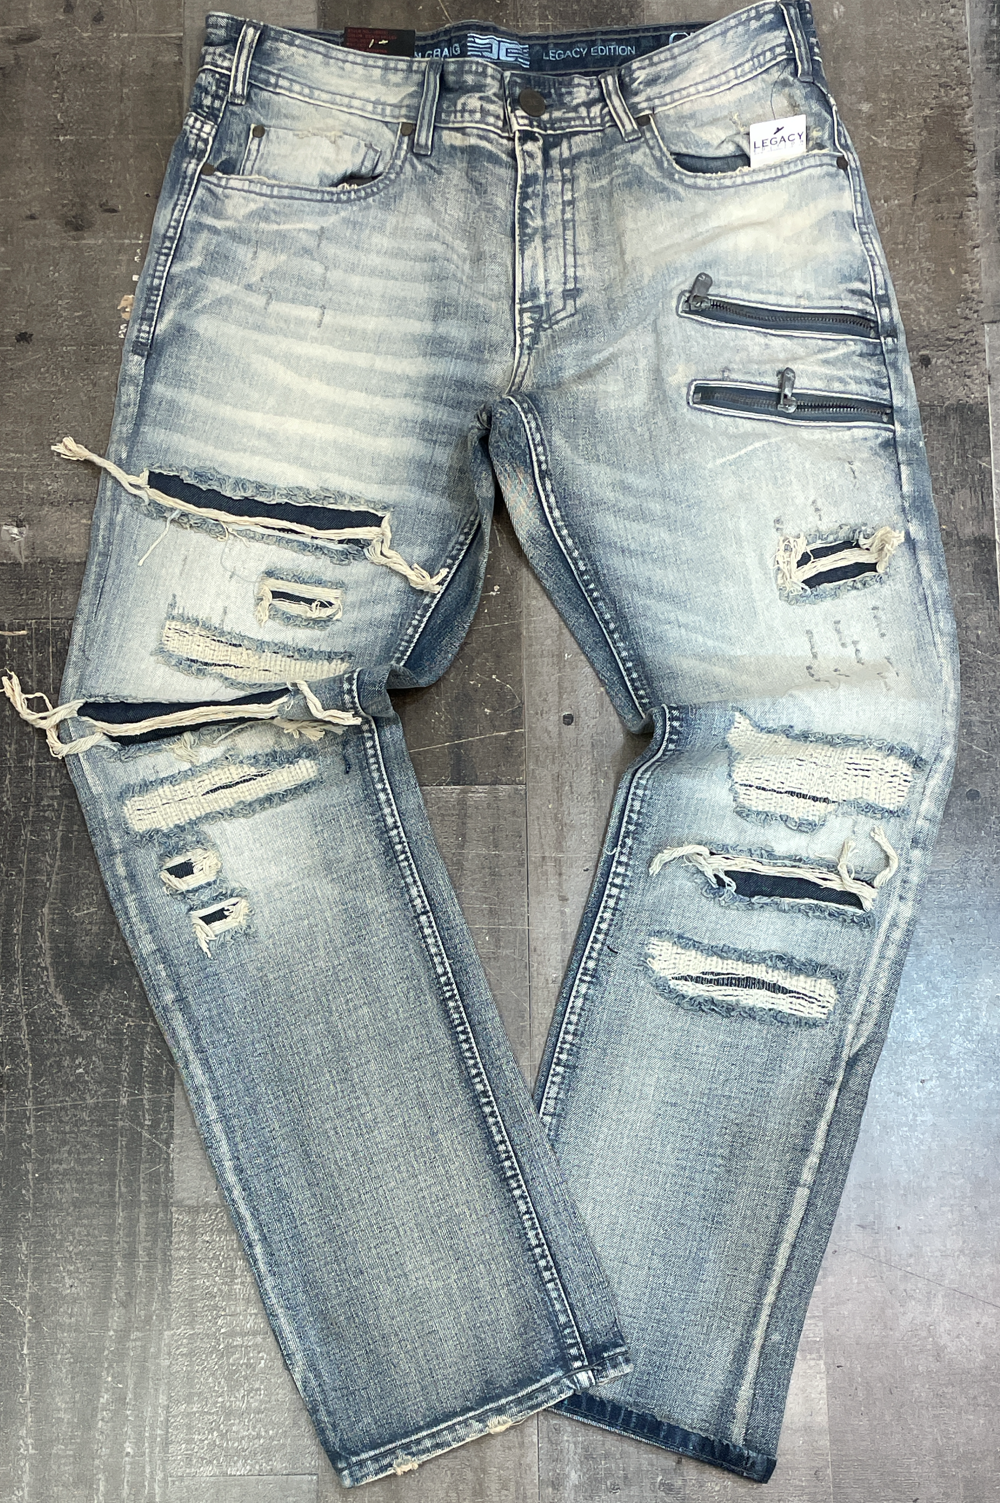 Jordan Craig- shredded patched jeans